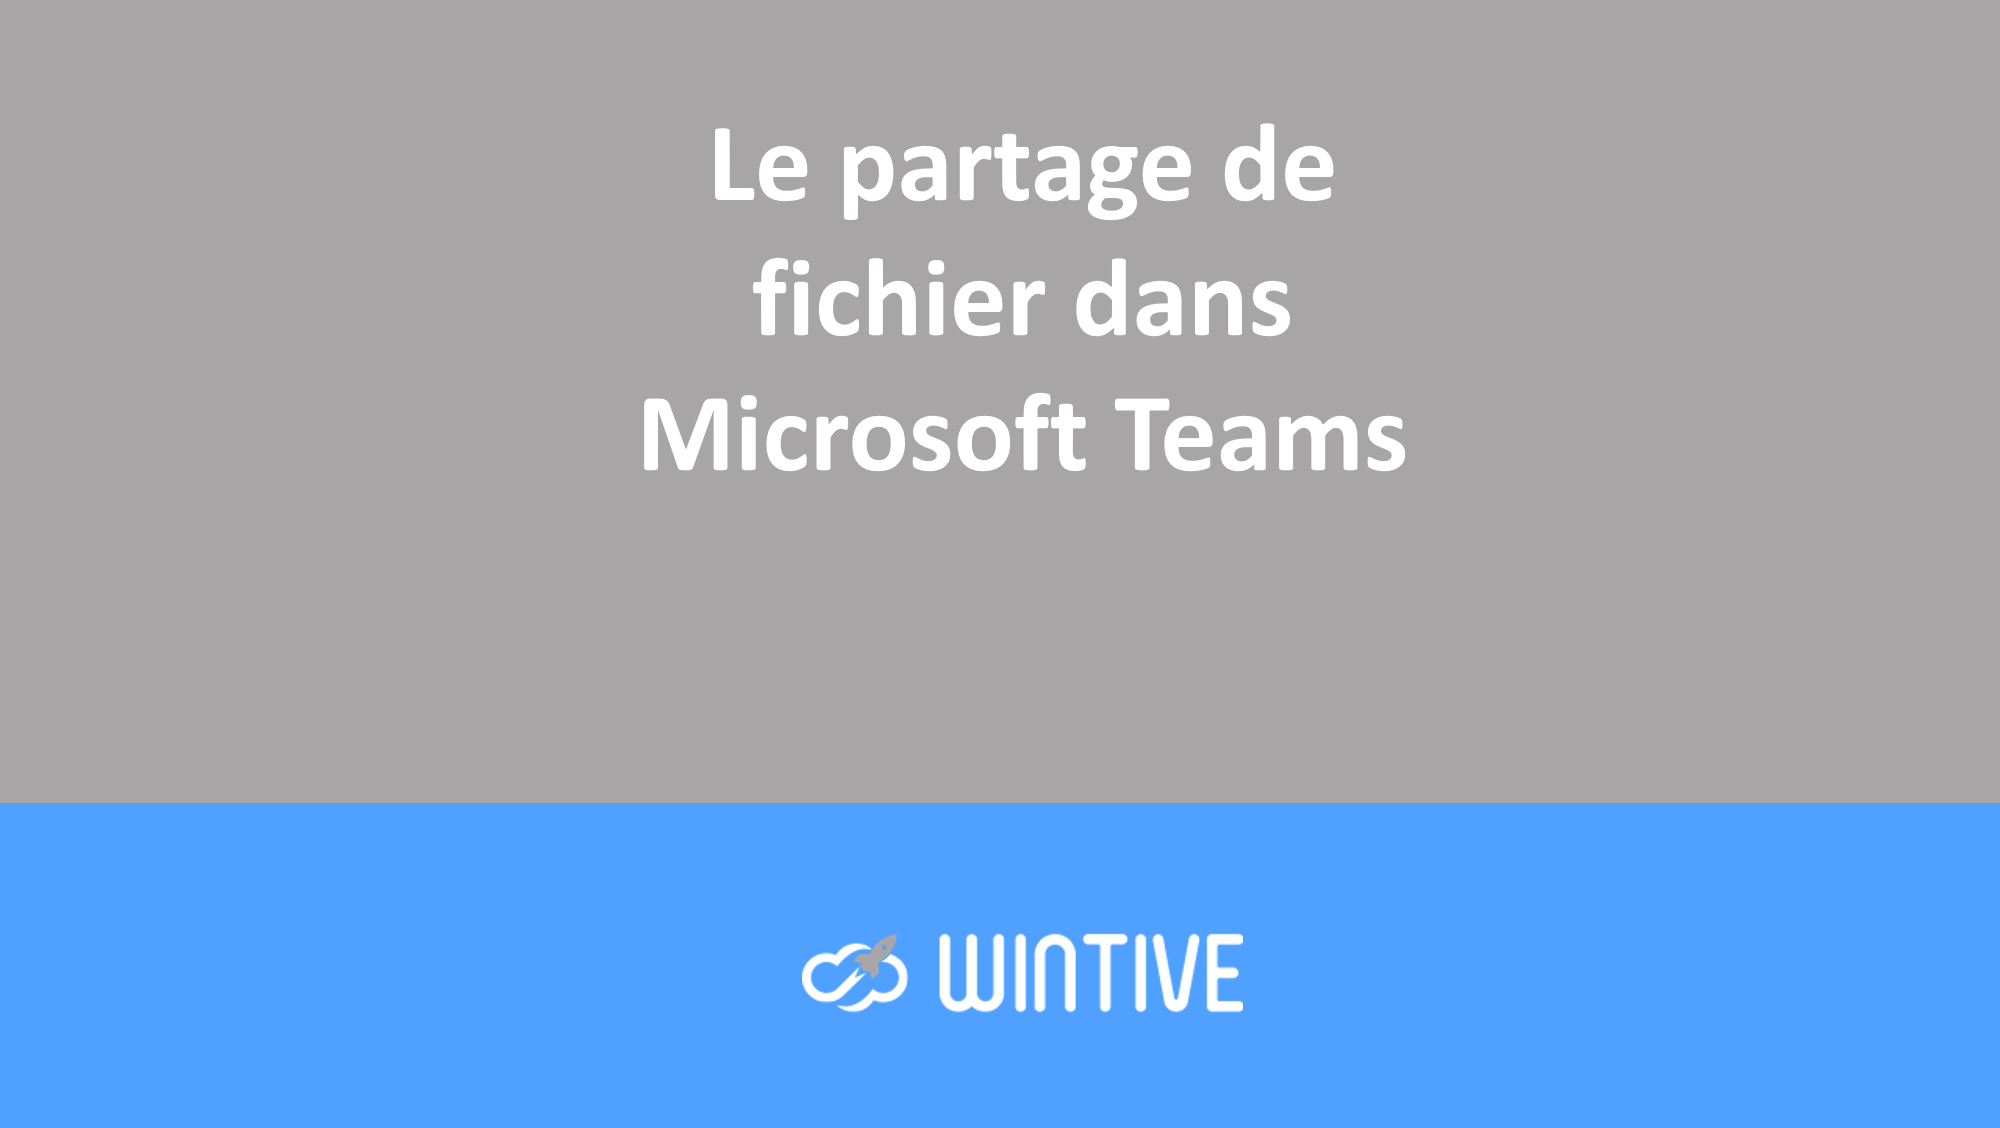 Le partage de fichier dans Microsoft Teams